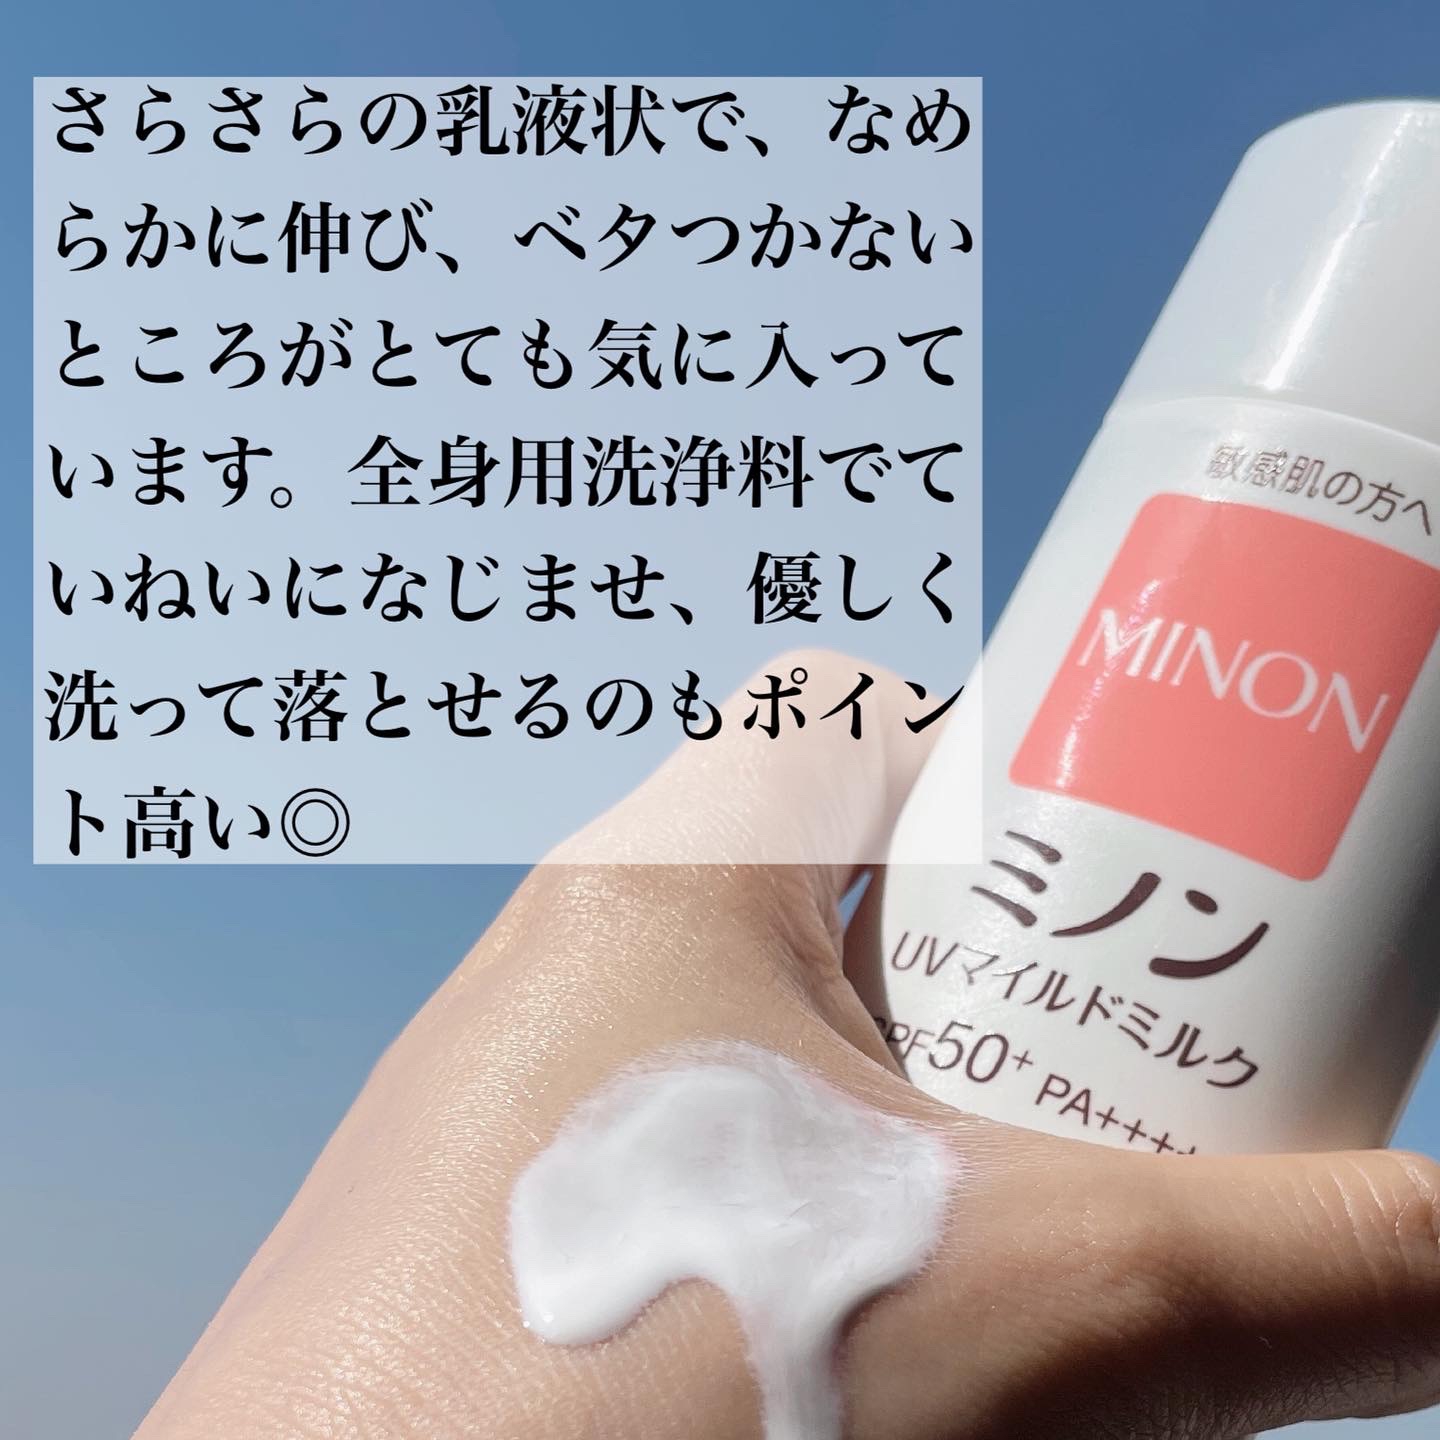 MINON(ミノン) UVマイルドミルクの良い点・メリットに関するなゆさんの口コミ画像2